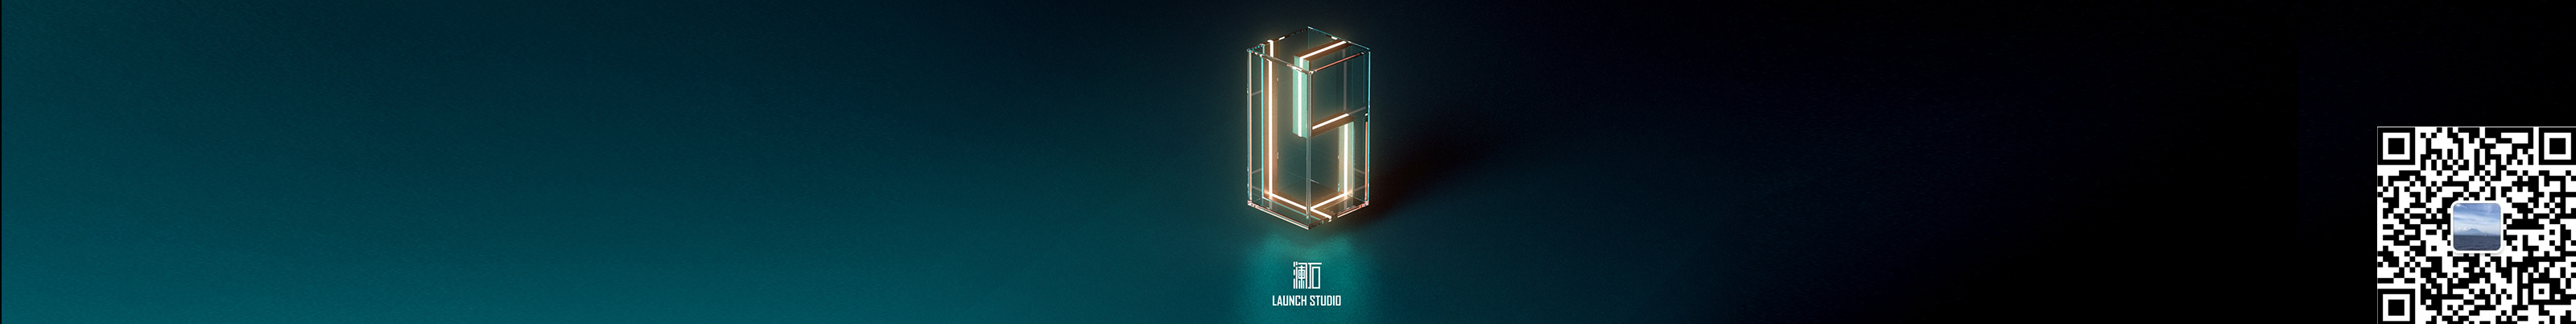 澜石 Launch studio's profile banner